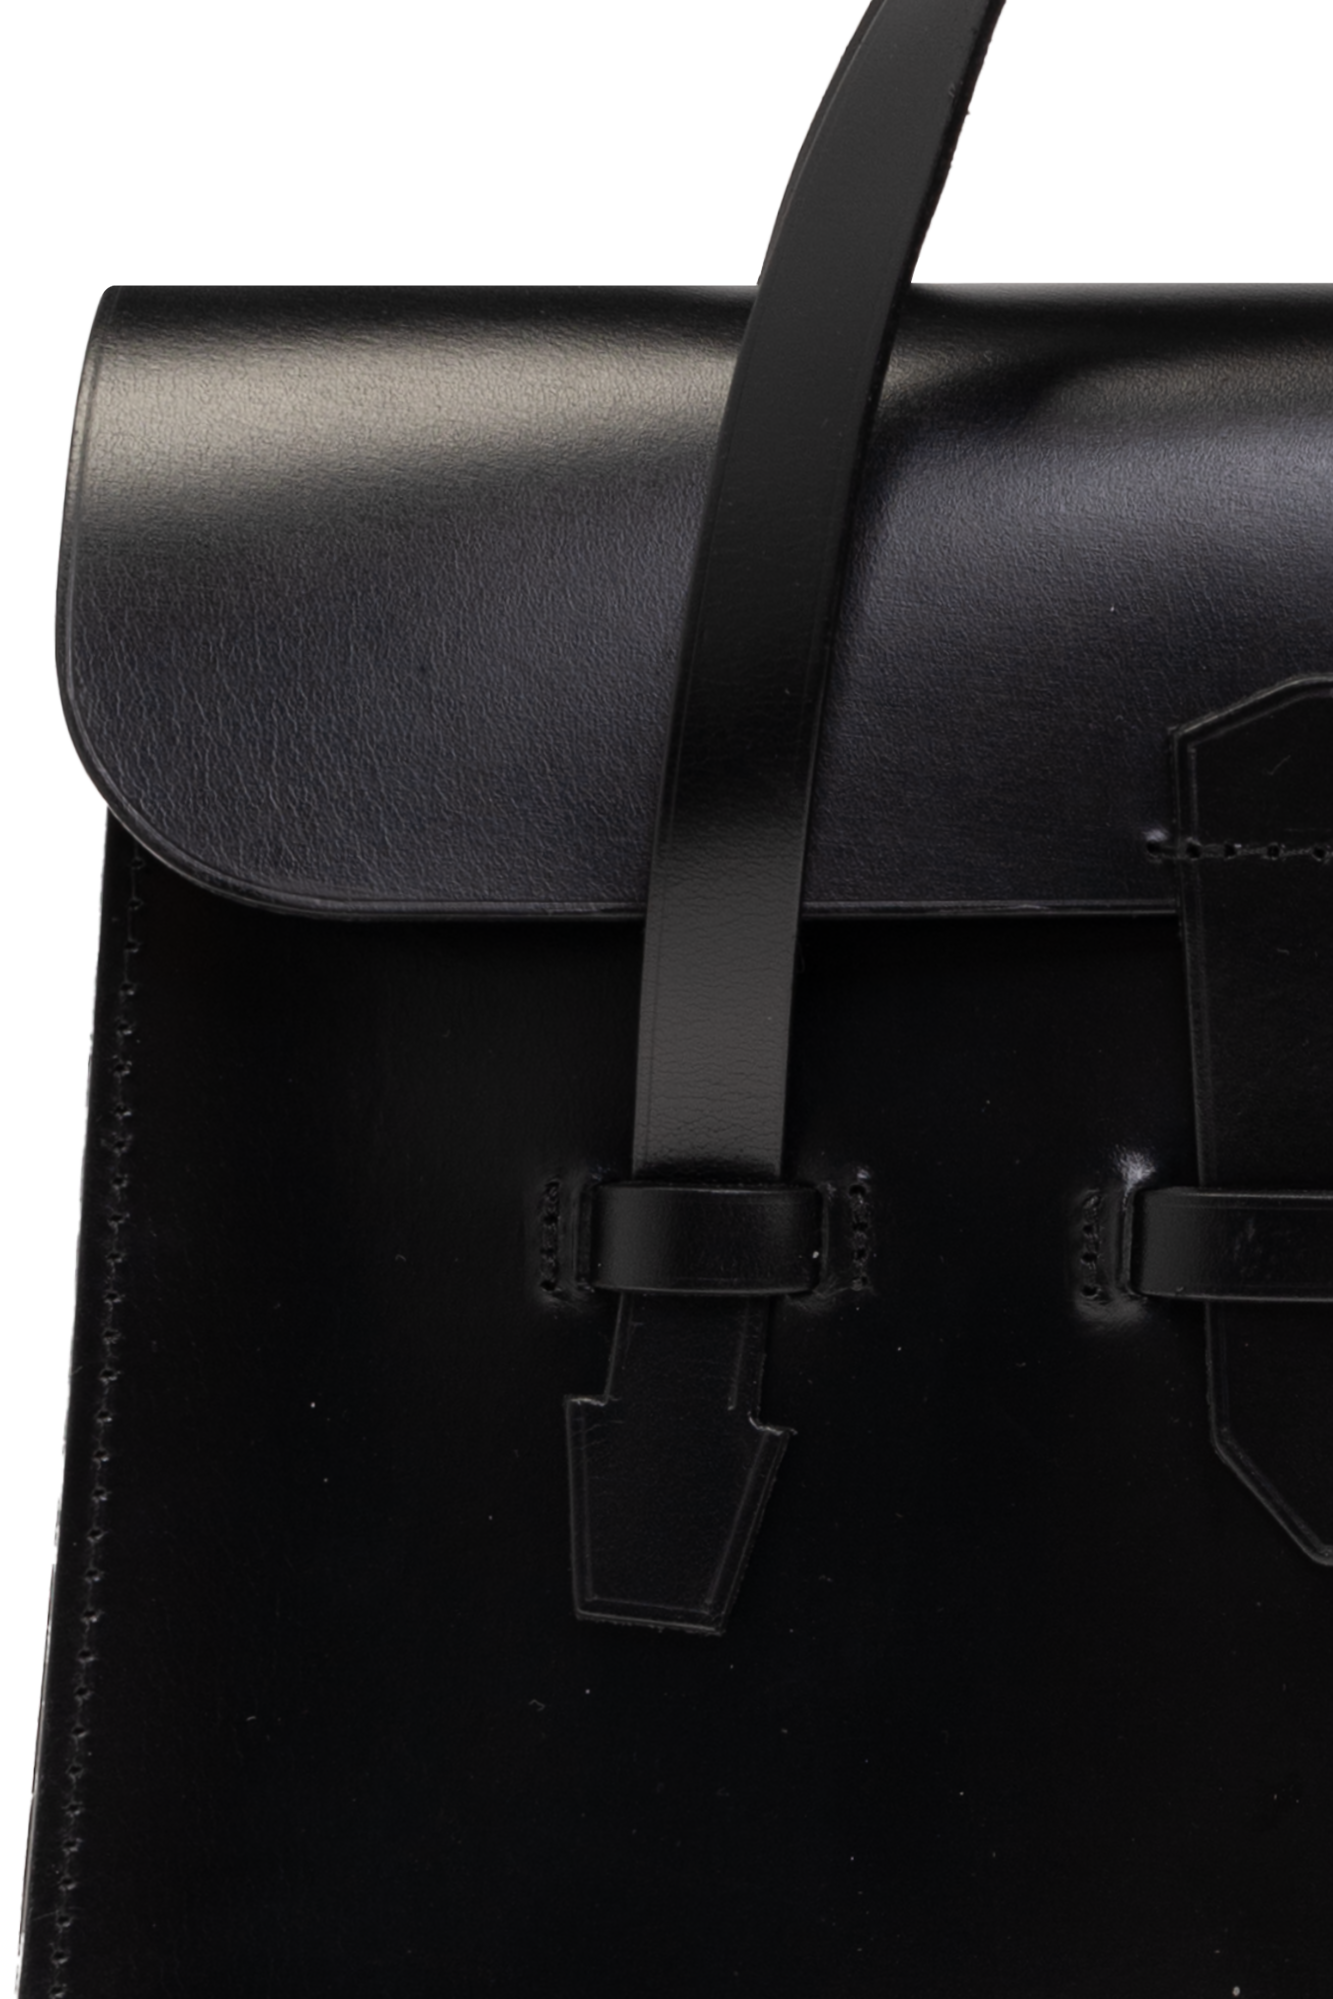 CDG by Comme des Garçons Leather handbag